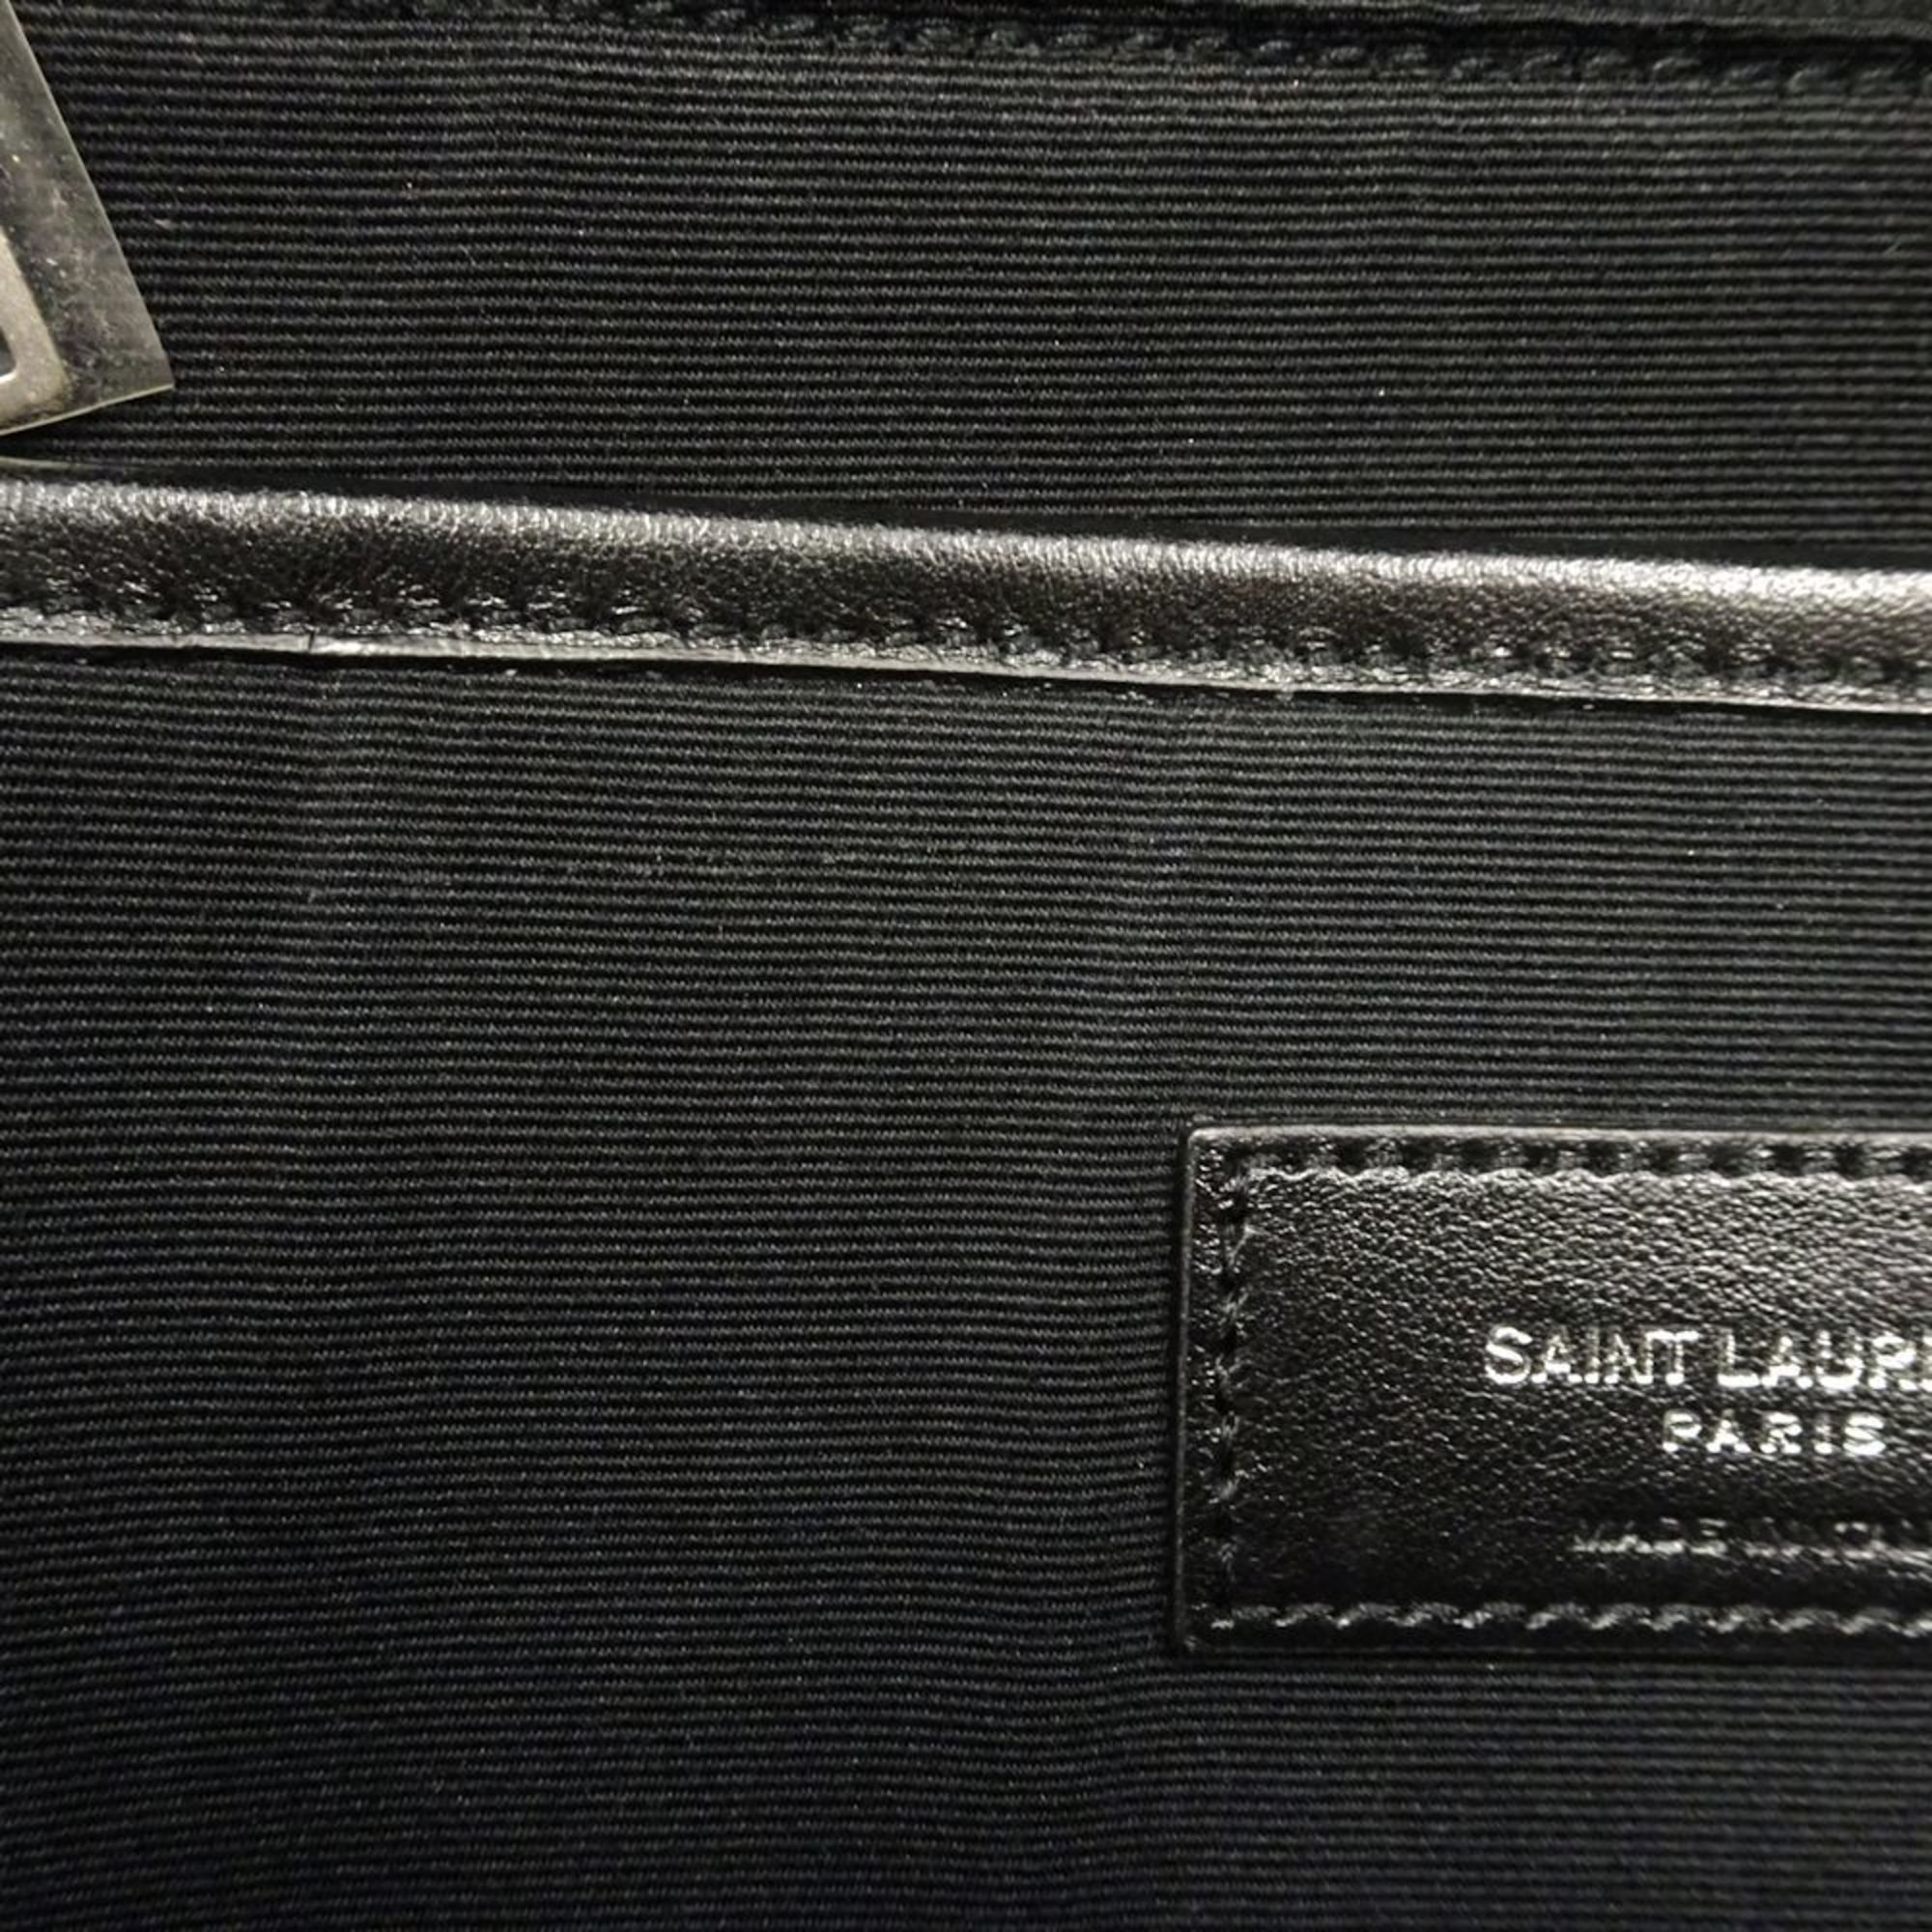 Saint Laurent SAINT LAURENT PARIS City Backpack Mini 508548 99HIE 1077 Rucksack/Backpack Star Pattern Men's Women's Canvas Black Multi 350061